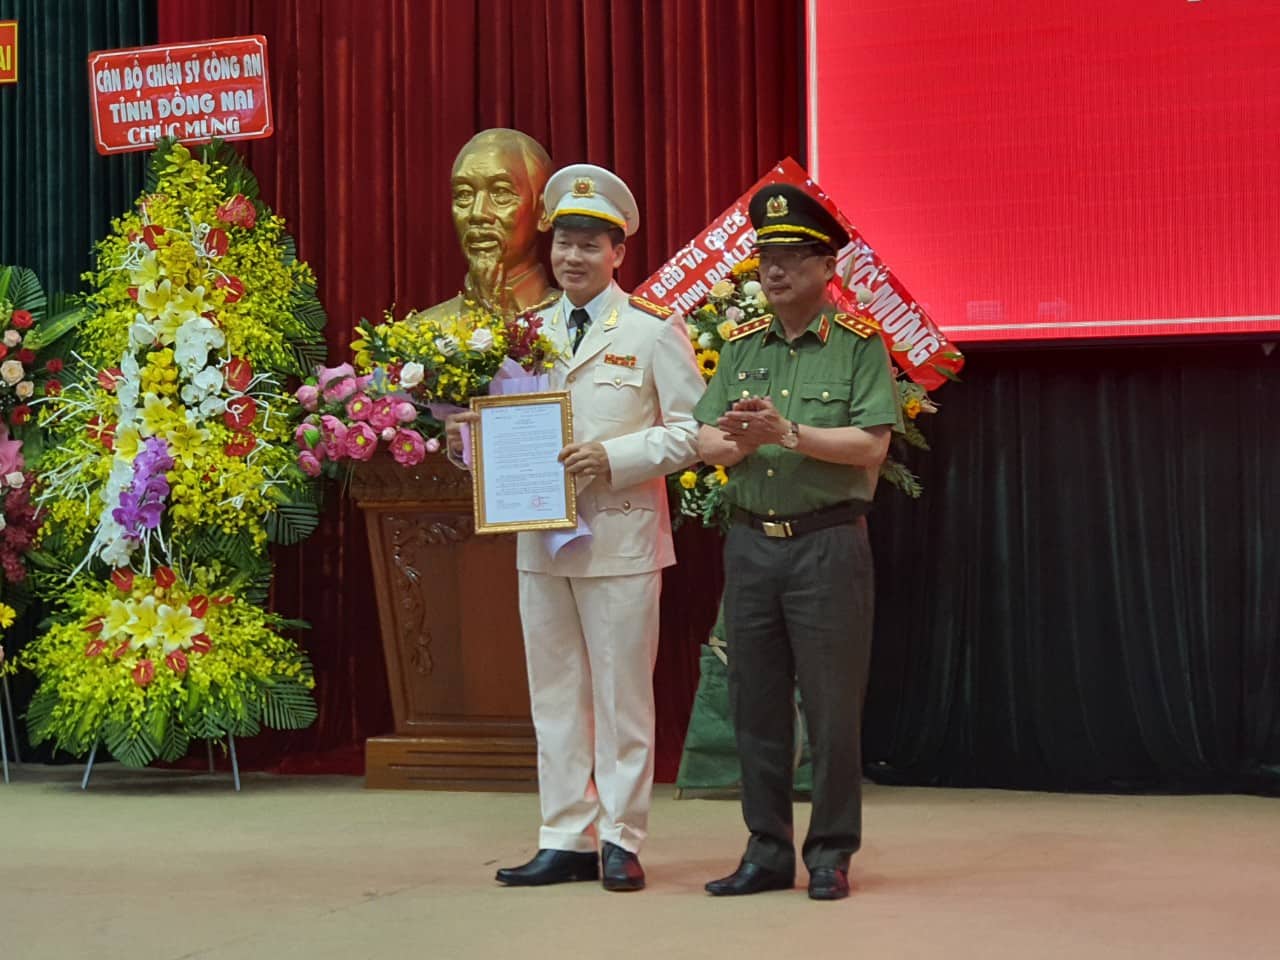 Đại tá Vũ Hồng Văn nhận quyết định về làm Giám đốc công an tỉnh Đồng Nai.jpg